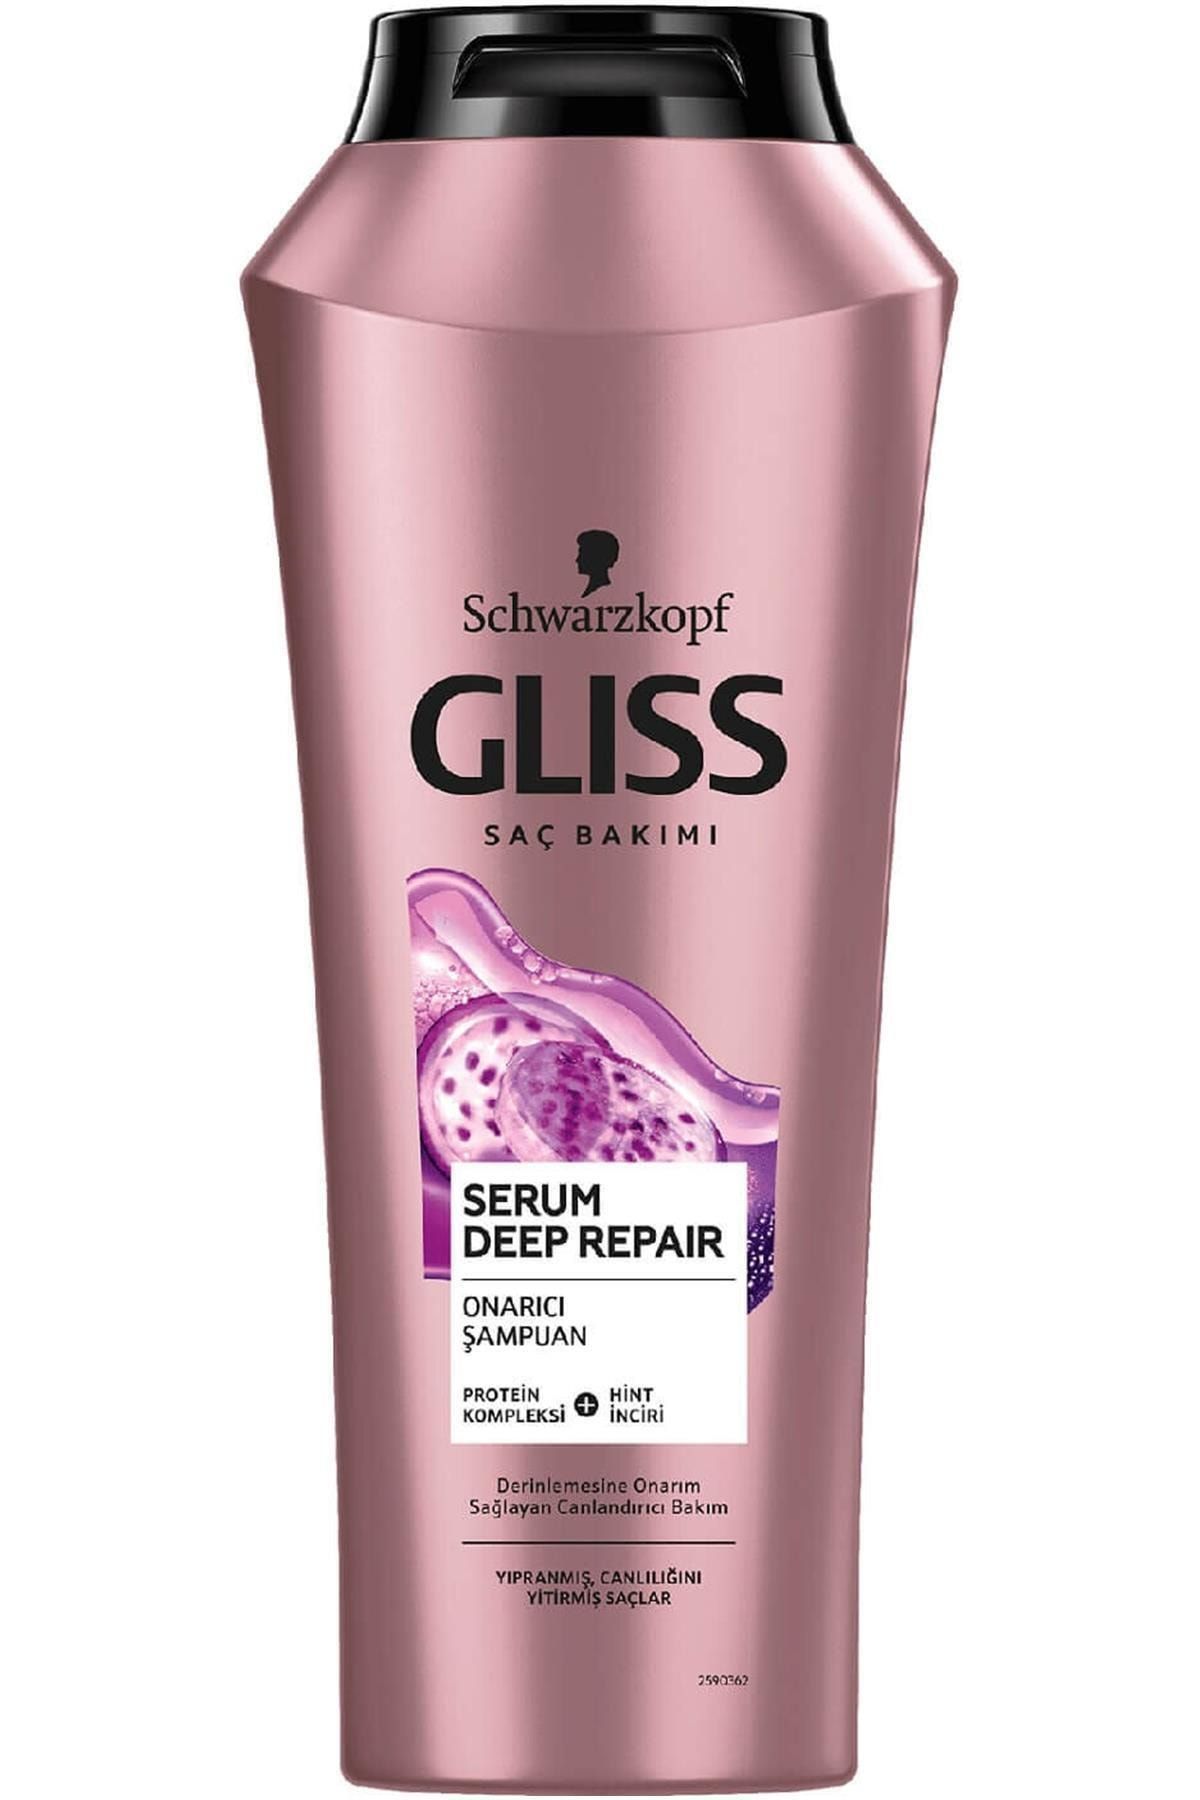 Gliss Marka: Serum Deep Repair Şampuan 500 Ml Kategori: Şampuan